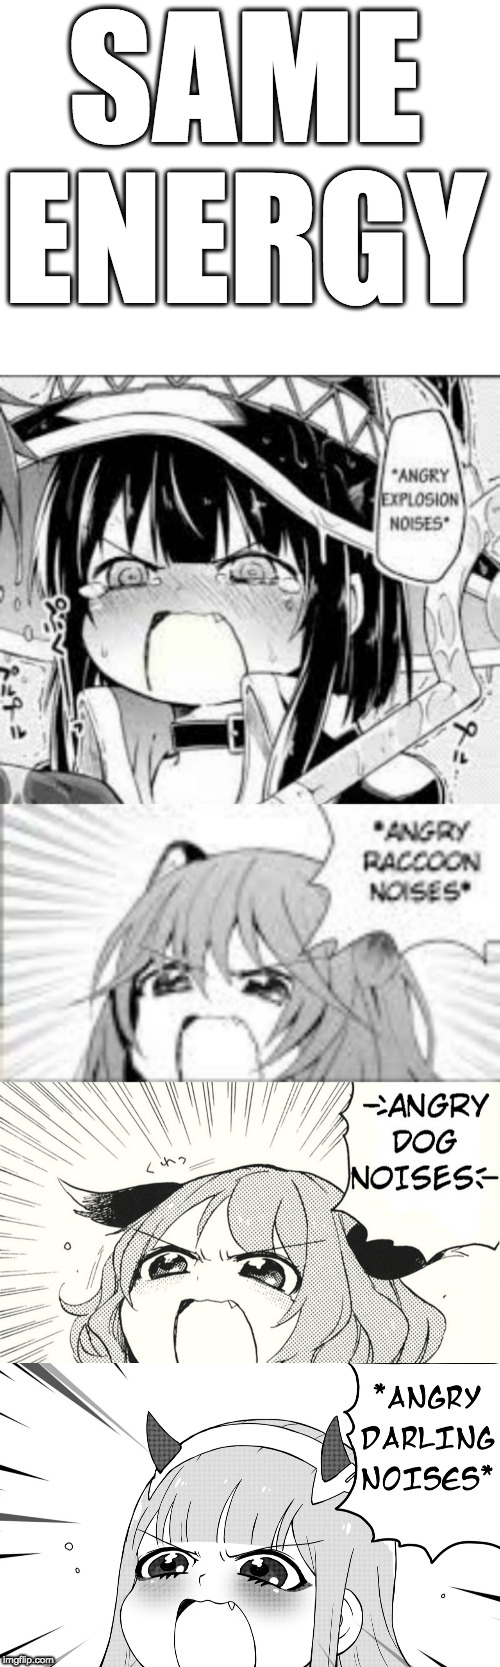 happy anime girl noises* : r/memes